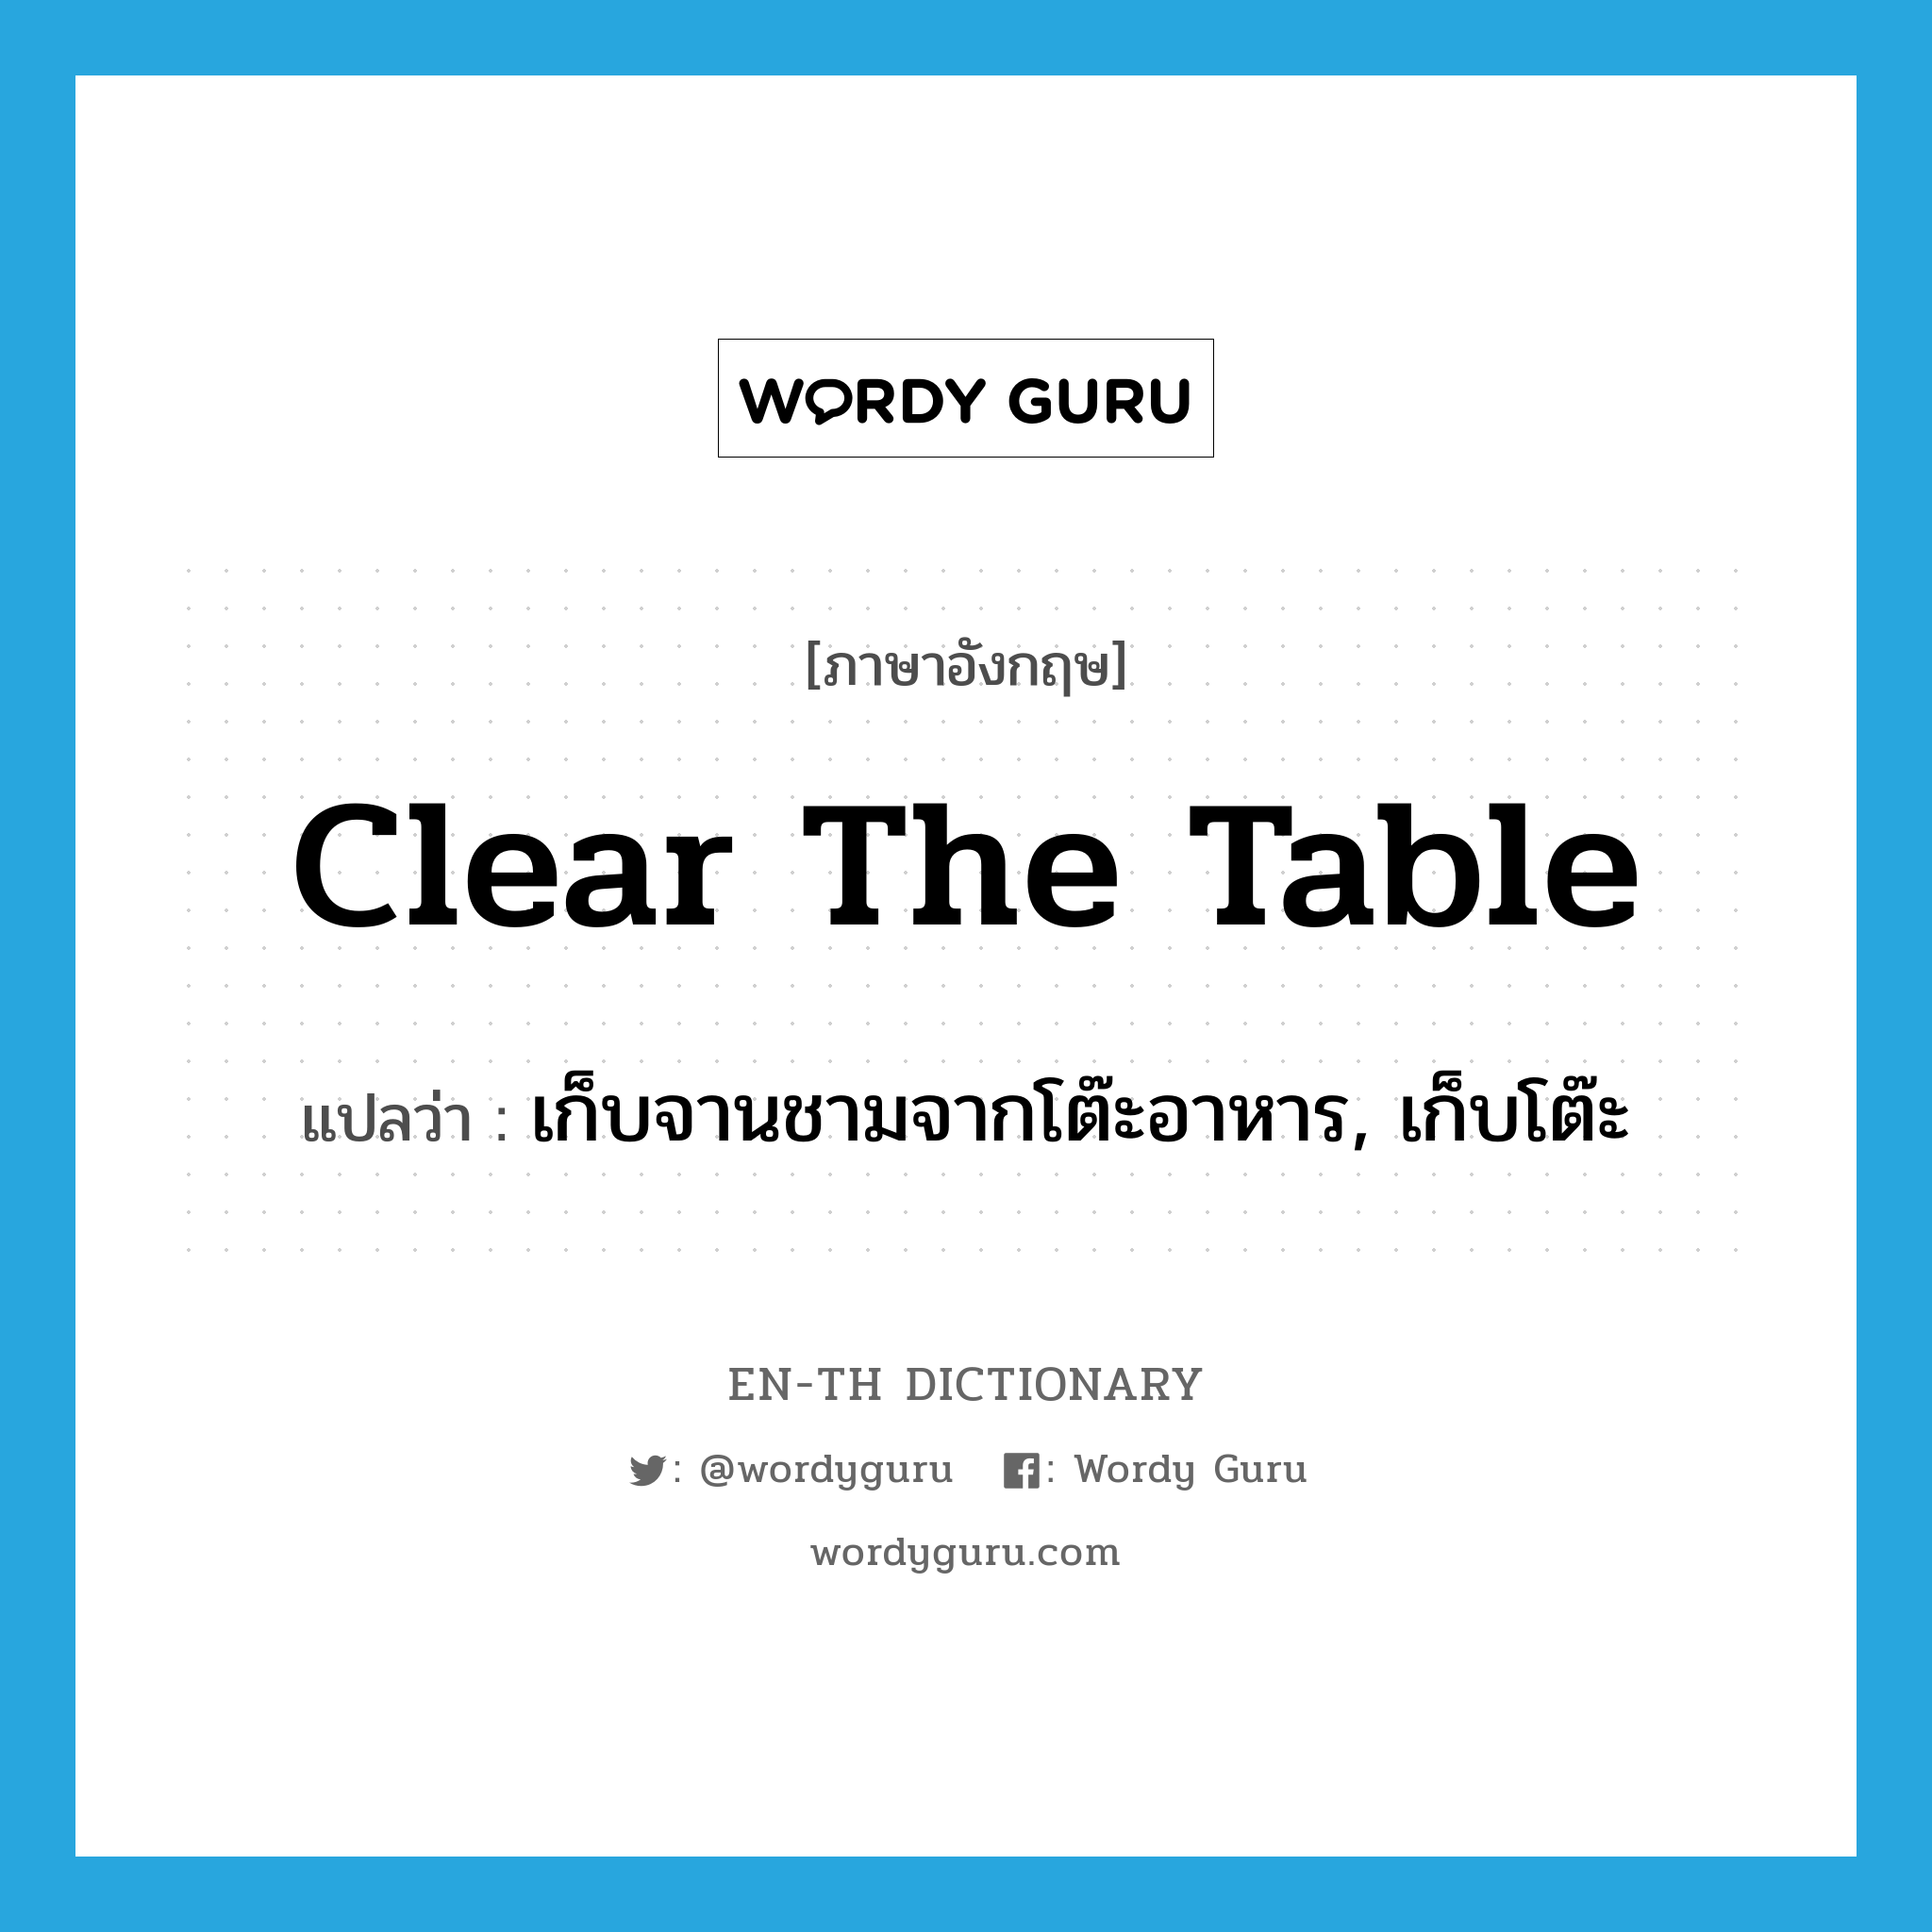 เก็บจานชามจากโต๊ะอาหาร, เก็บโต๊ะ ภาษาอังกฤษ?, คำศัพท์ภาษาอังกฤษ เก็บจานชามจากโต๊ะอาหาร, เก็บโต๊ะ แปลว่า clear the table ประเภท IDM หมวด IDM